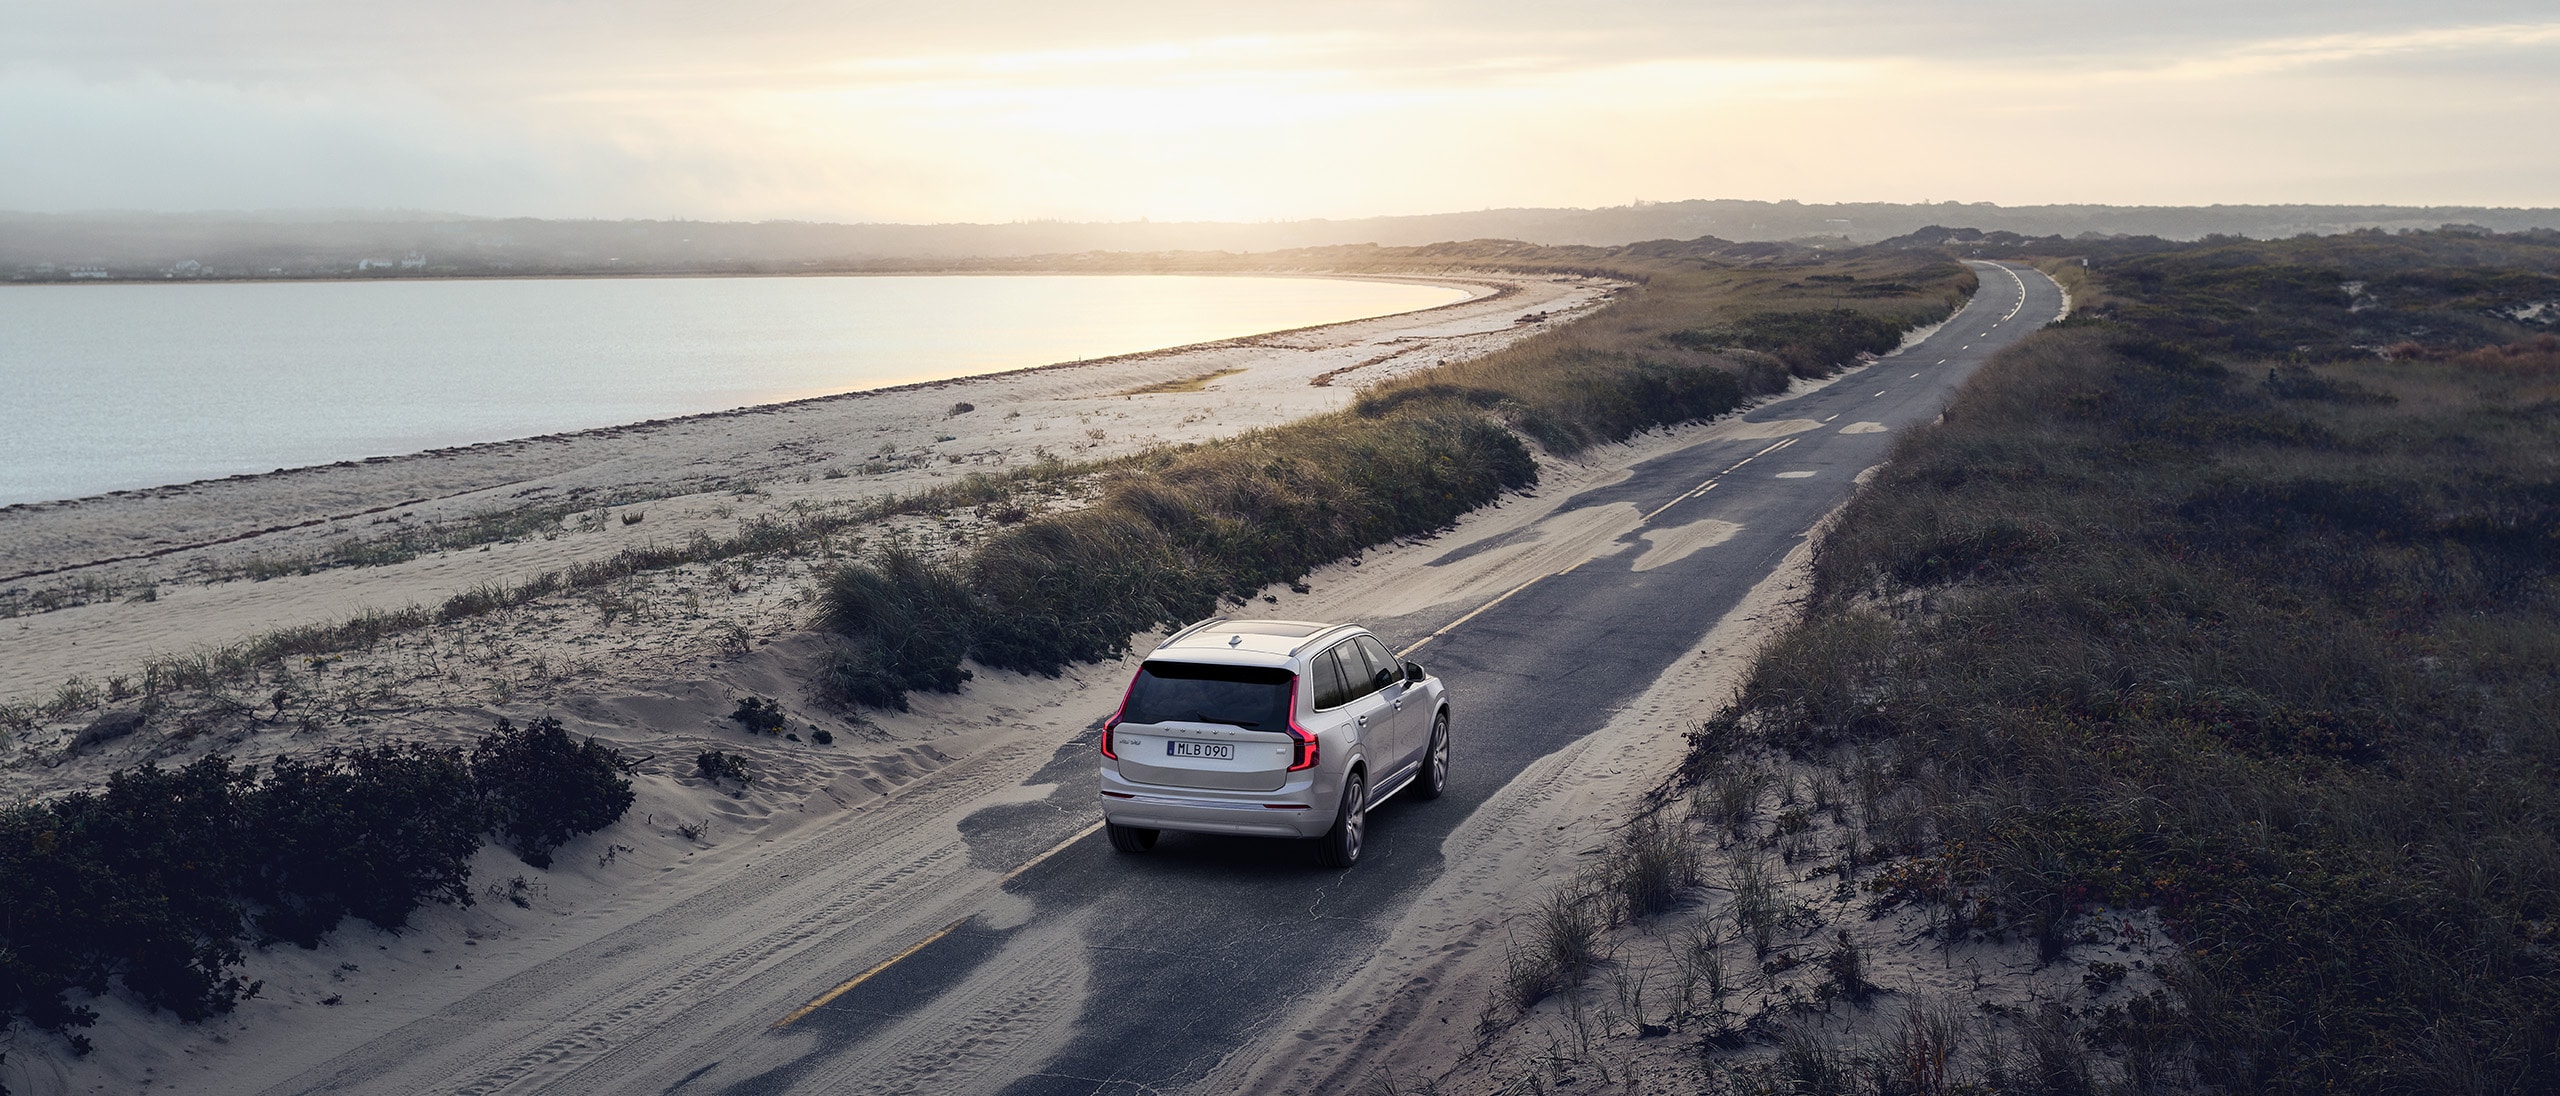 Een grijze Volvo XC60 rijdt bij zonsopgang op een landweg omgeven door uitgestrekte velden